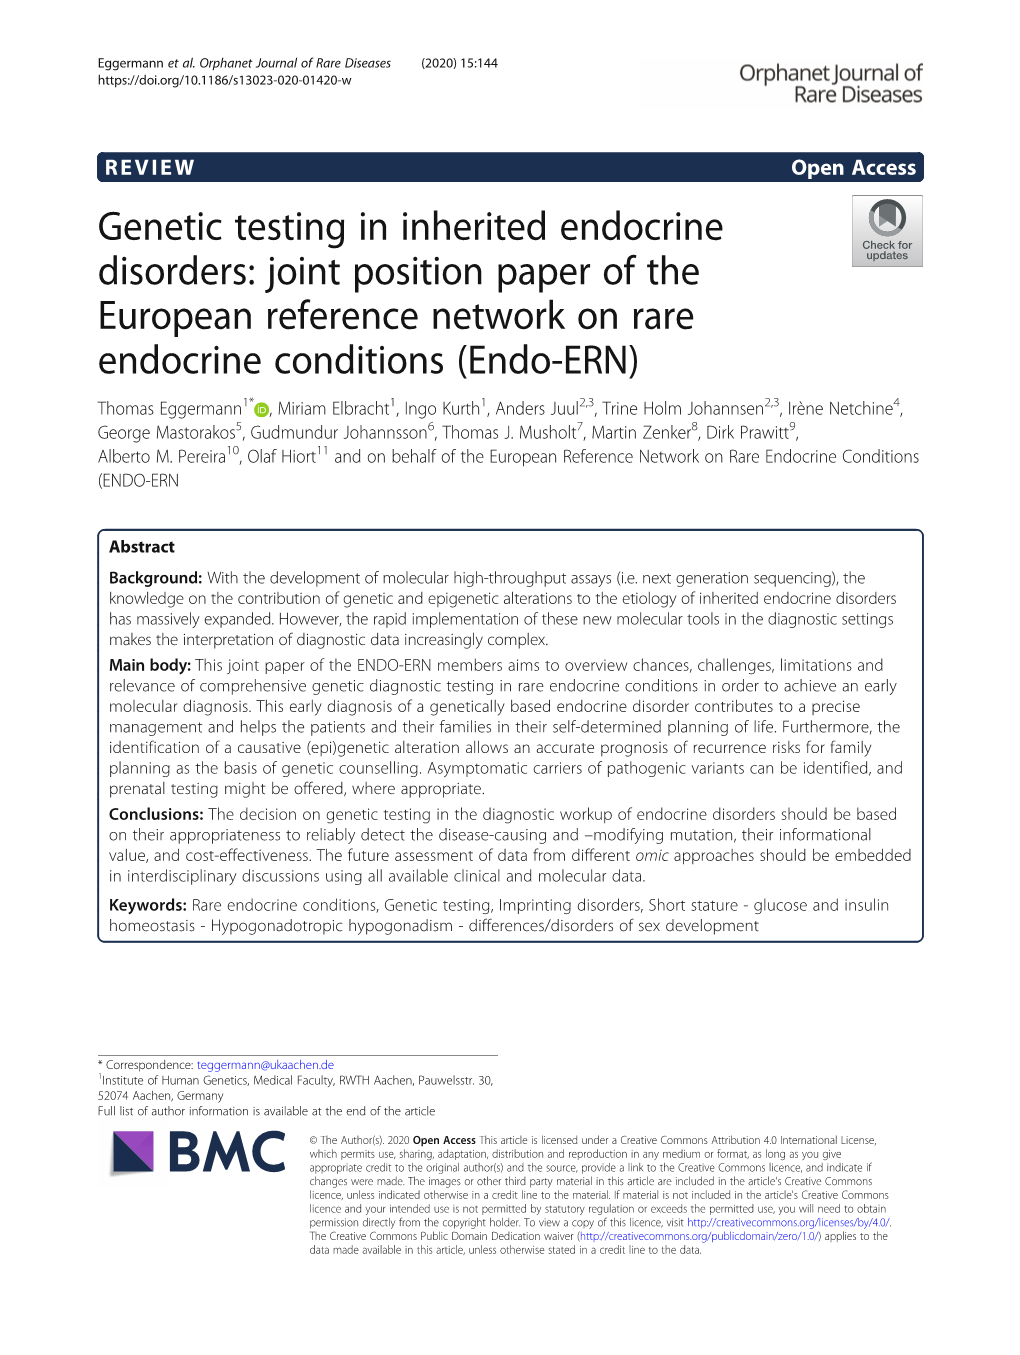 Genetic Testing in Inherited Endocrine Disorders